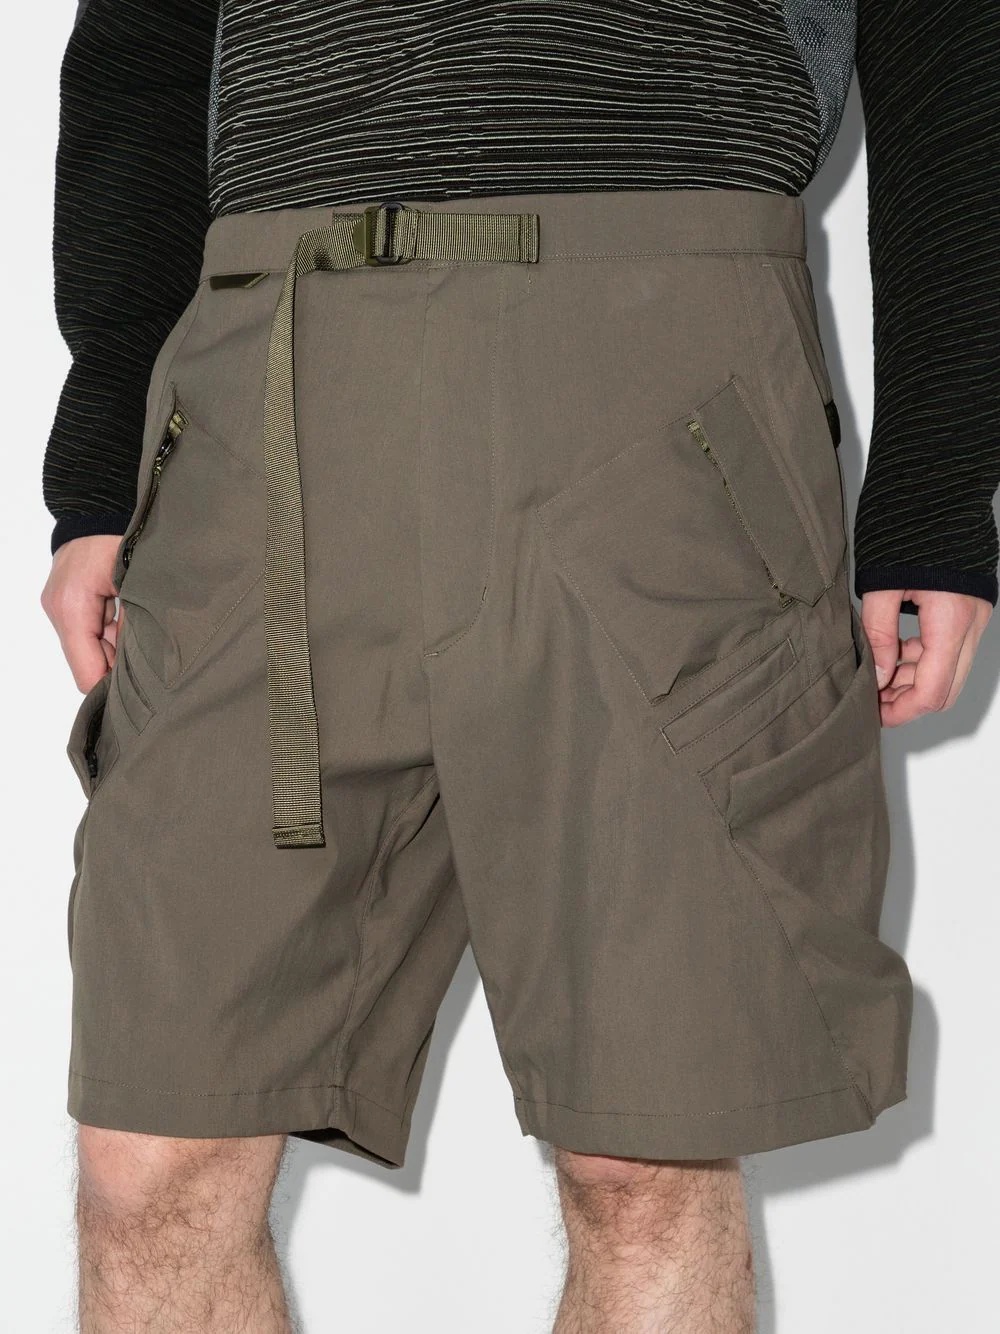 Encapsulated cargo shorts - 2